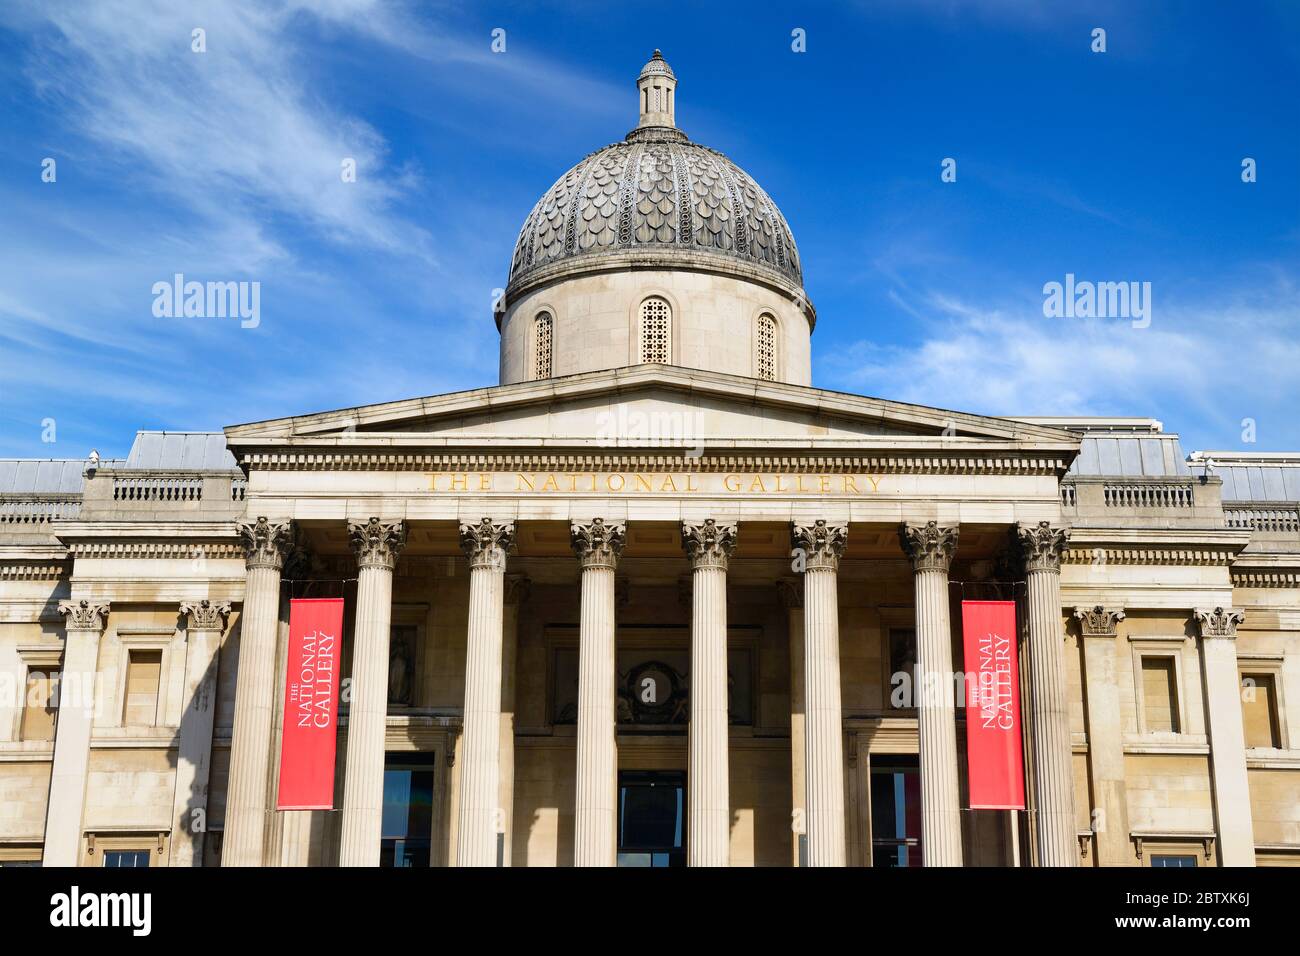 La Galería Nacional, Trafalgar Square, Londres, Reino Unido. Foto de stock